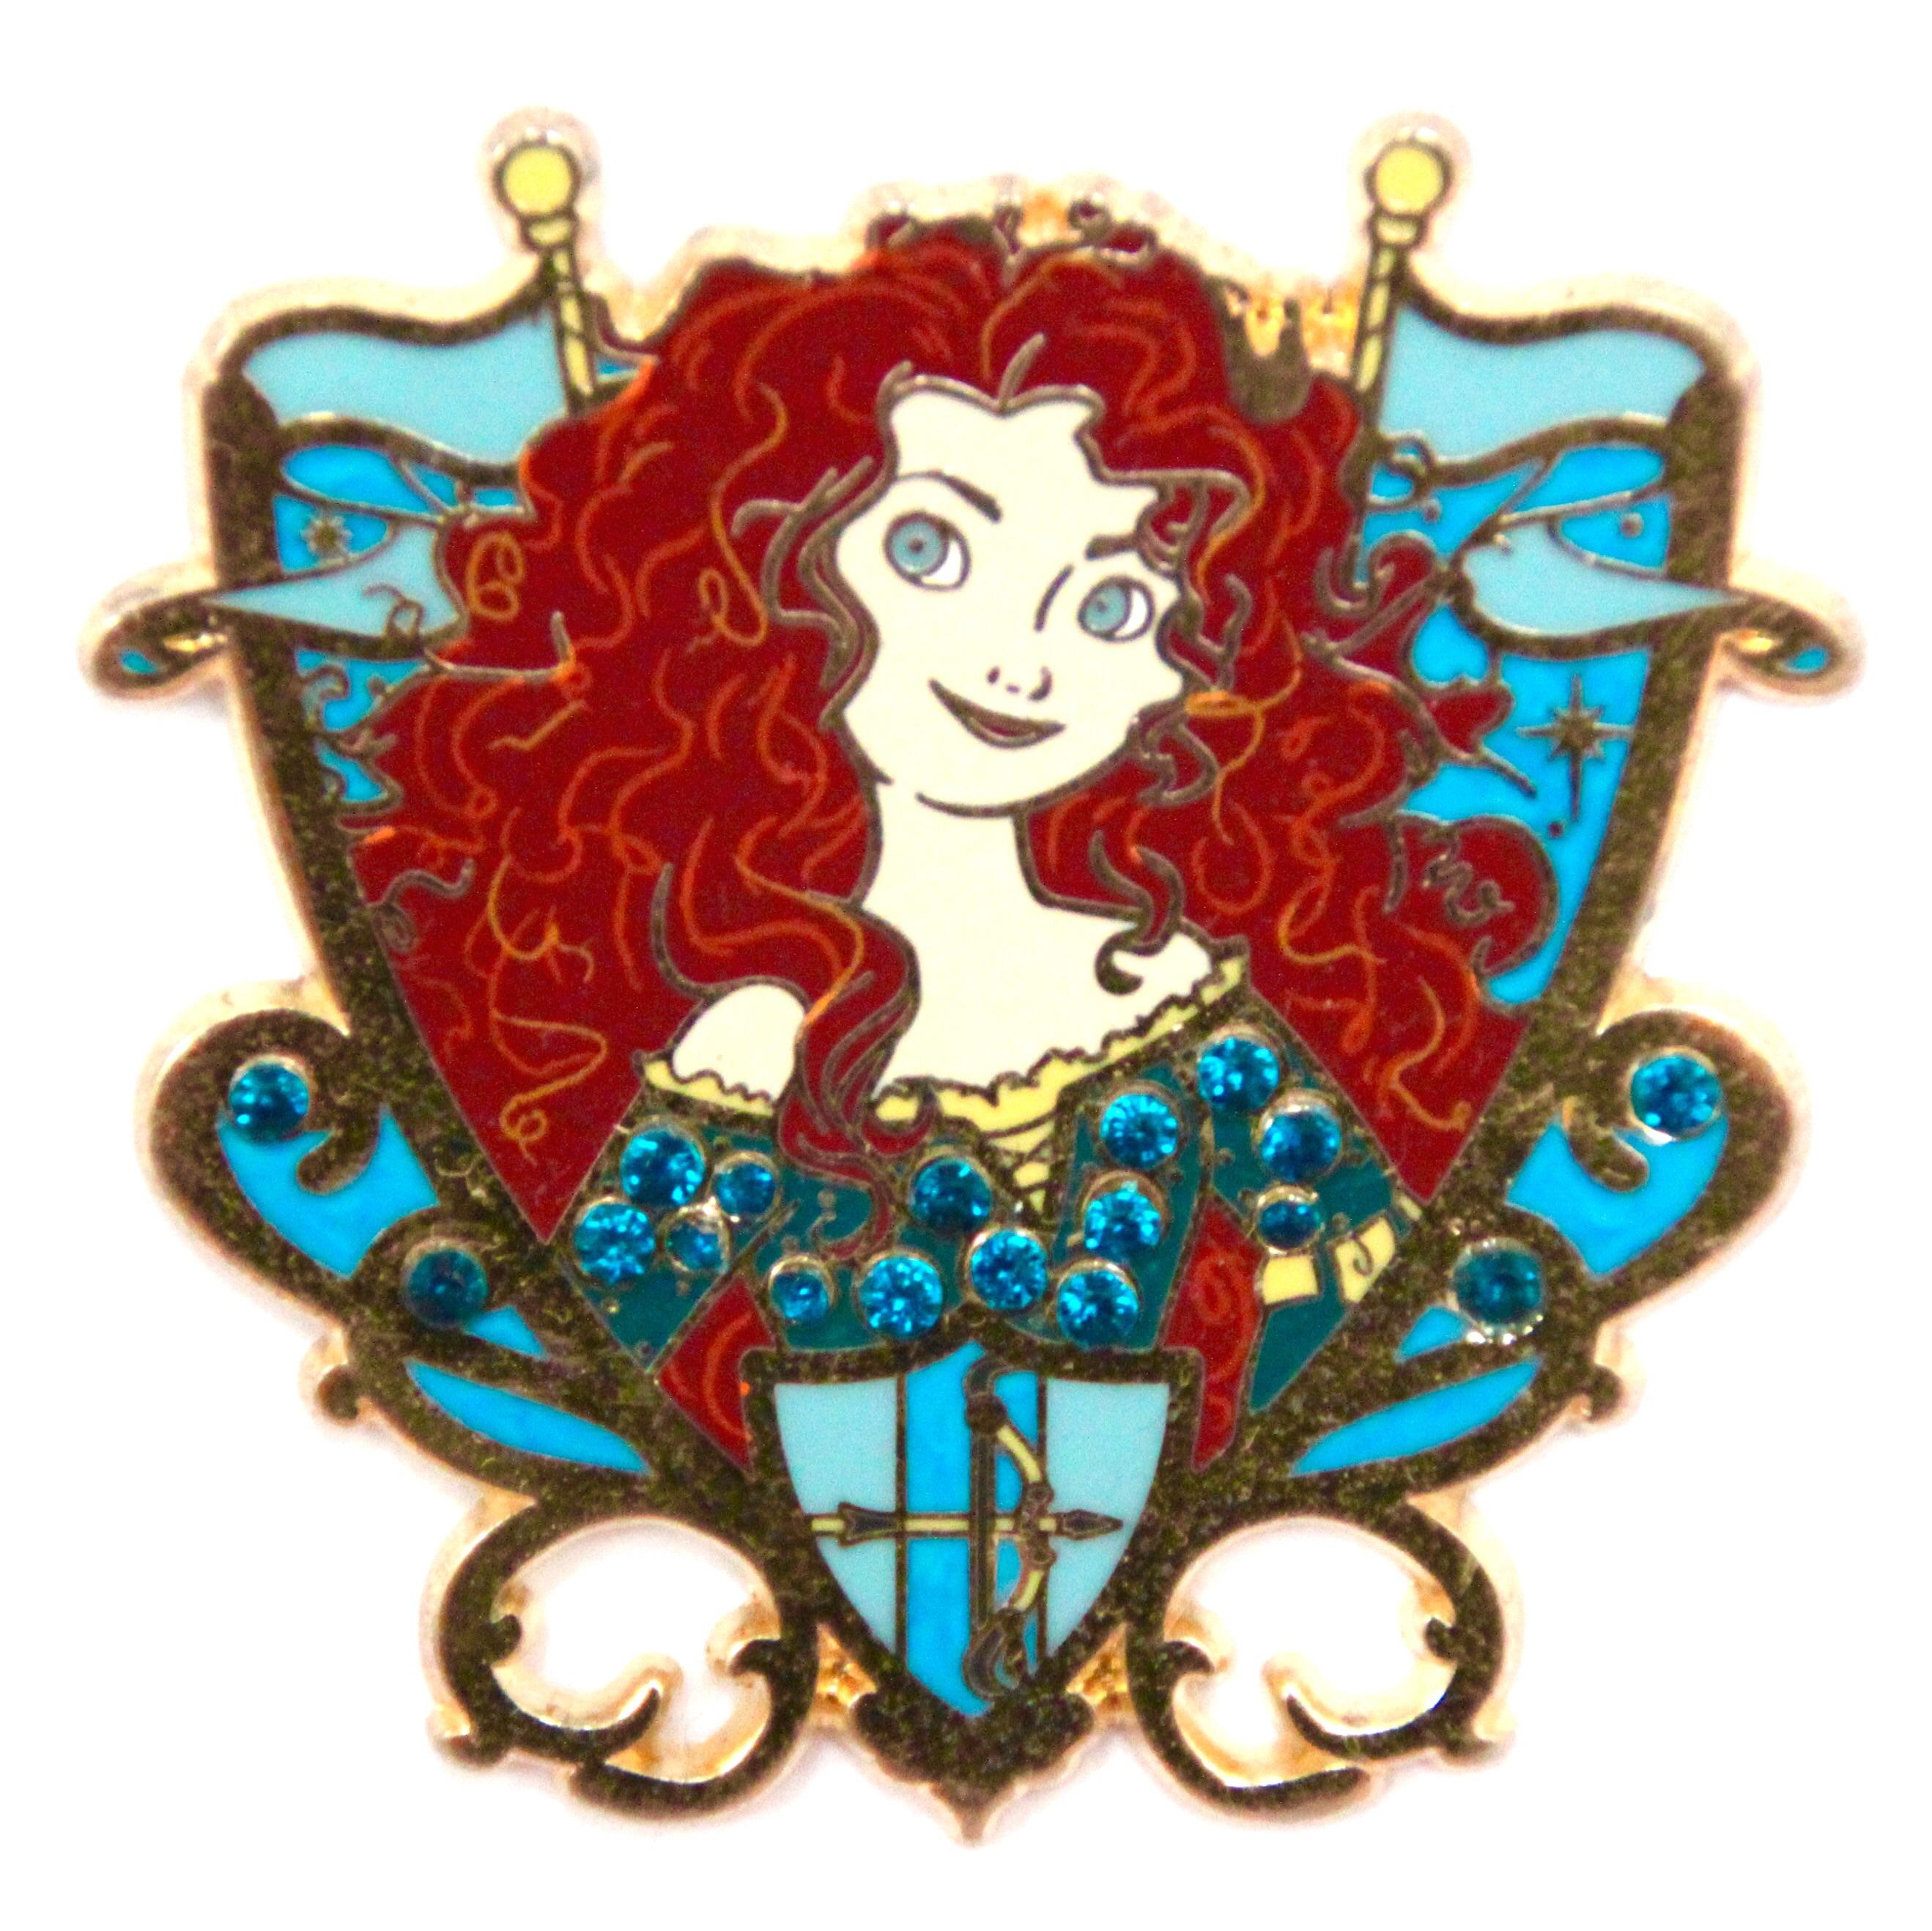 Merida - Brave - Princess Jeweled Crest